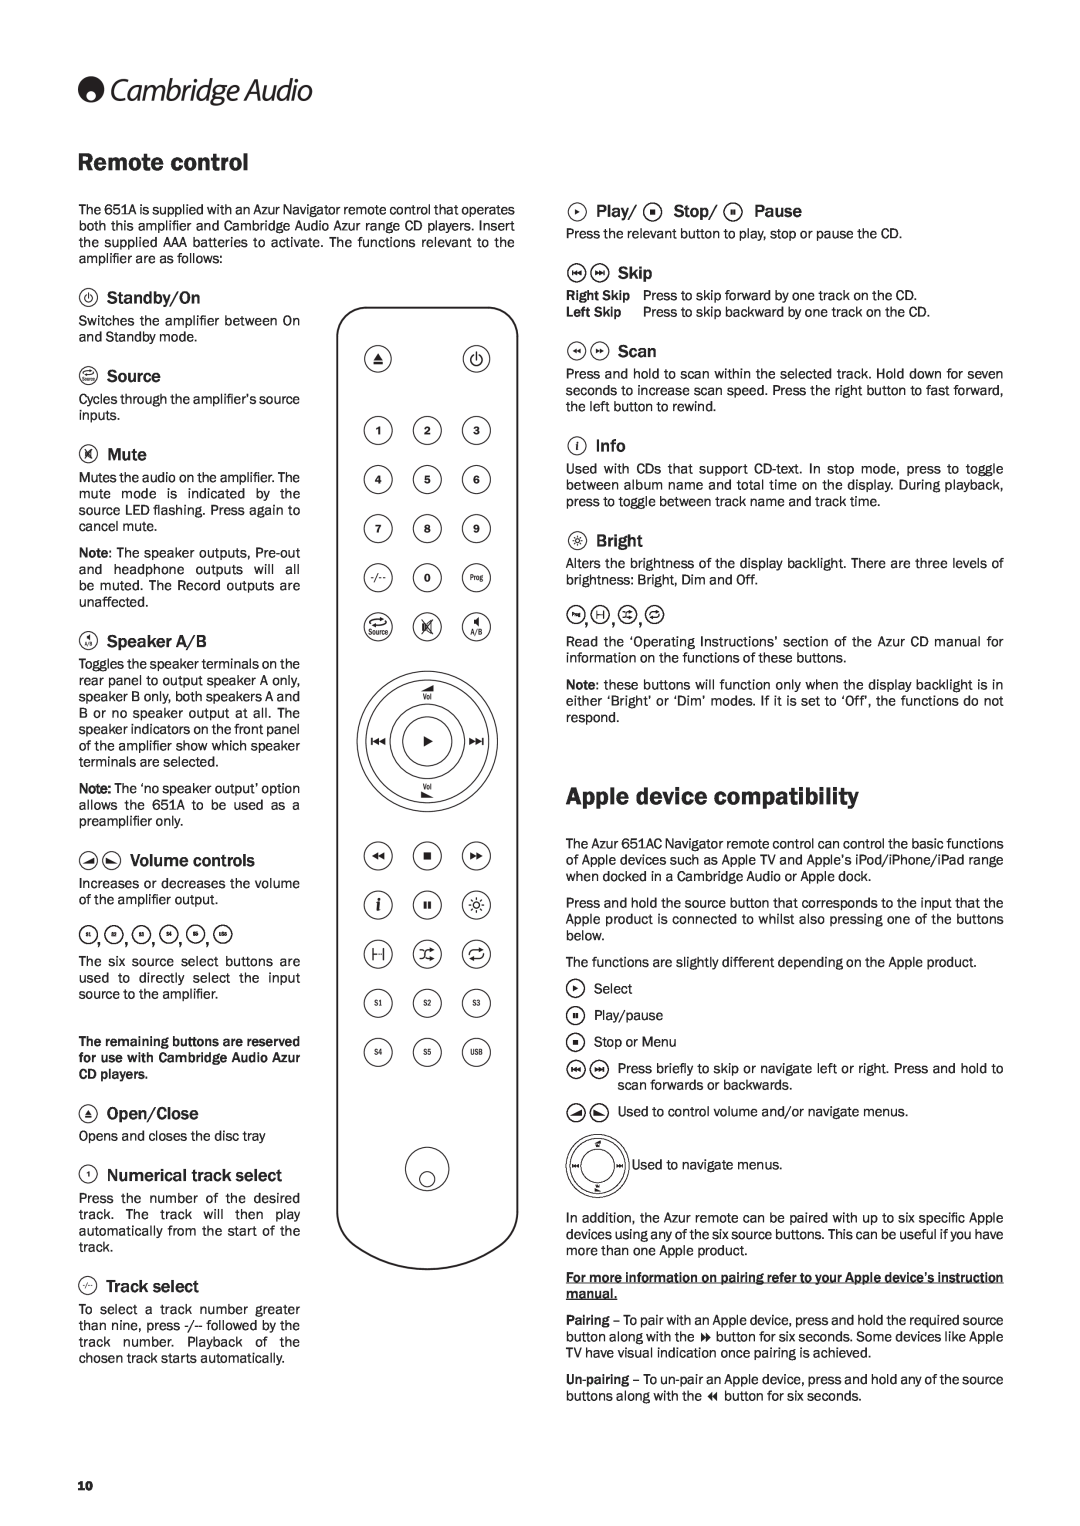 Cambridge Audio 651A user manual Remote control, Apple device compatibility 